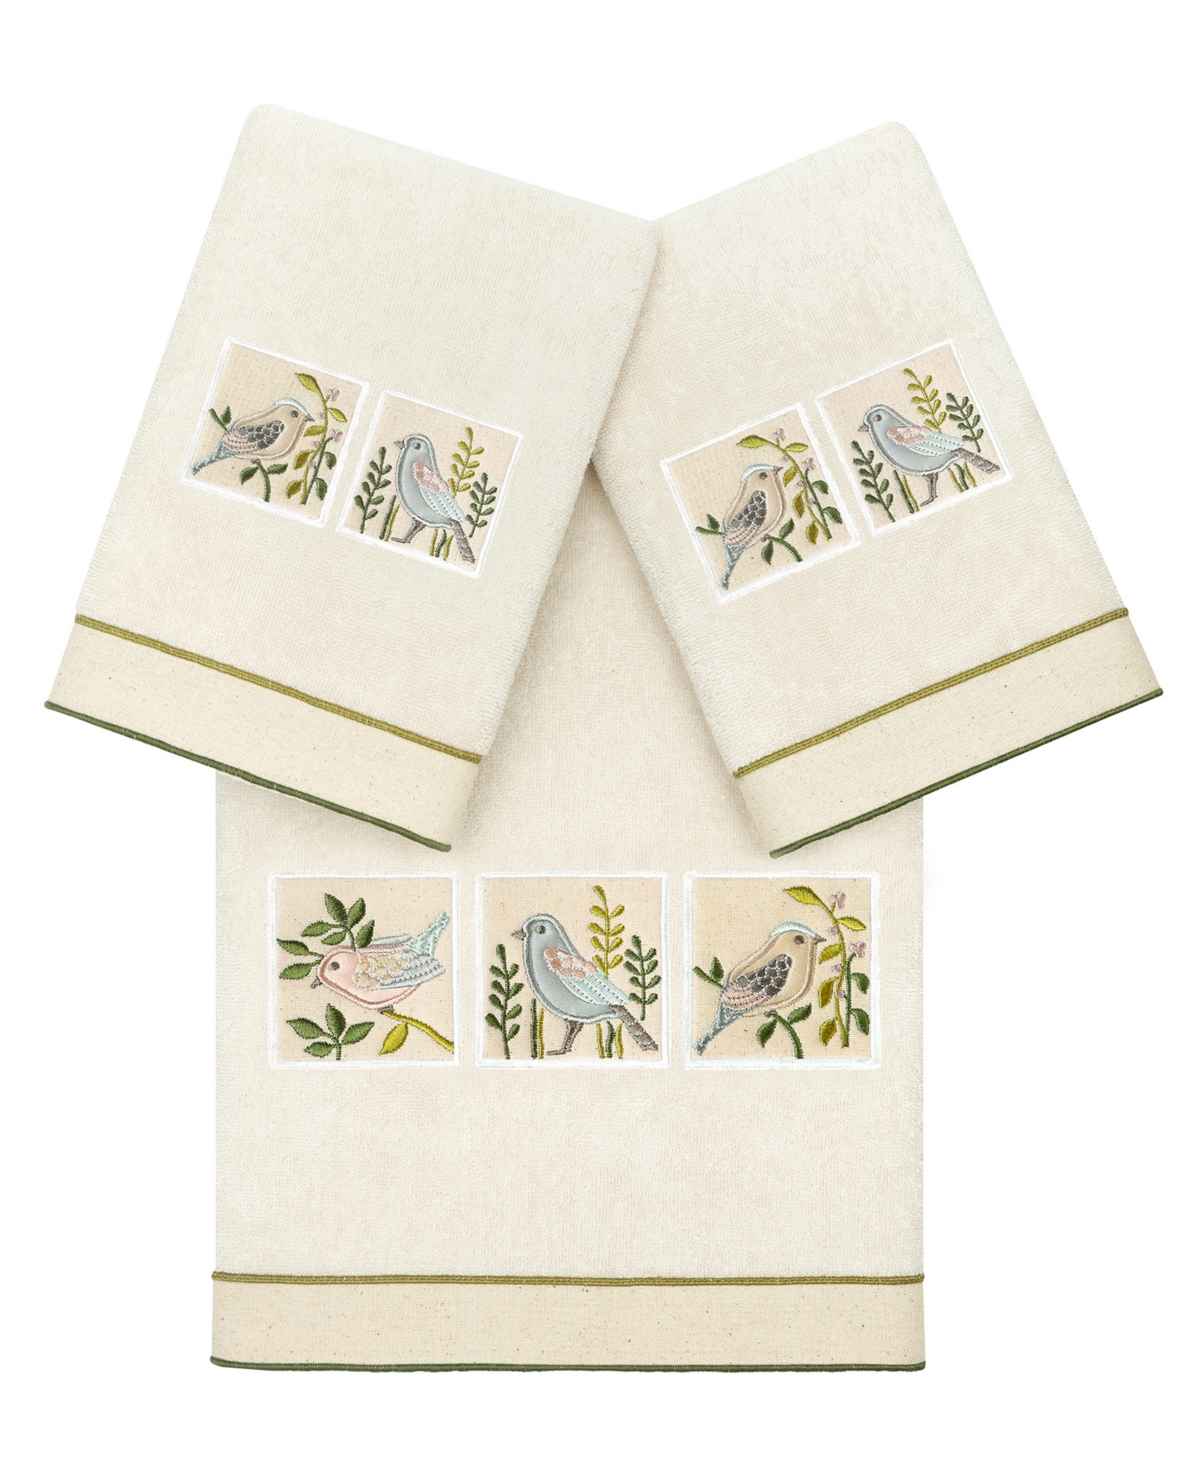 Linum Home Textiles Turkish Cotton Belinda Embellished Towel Set, 3 Piece Bedding In Beige